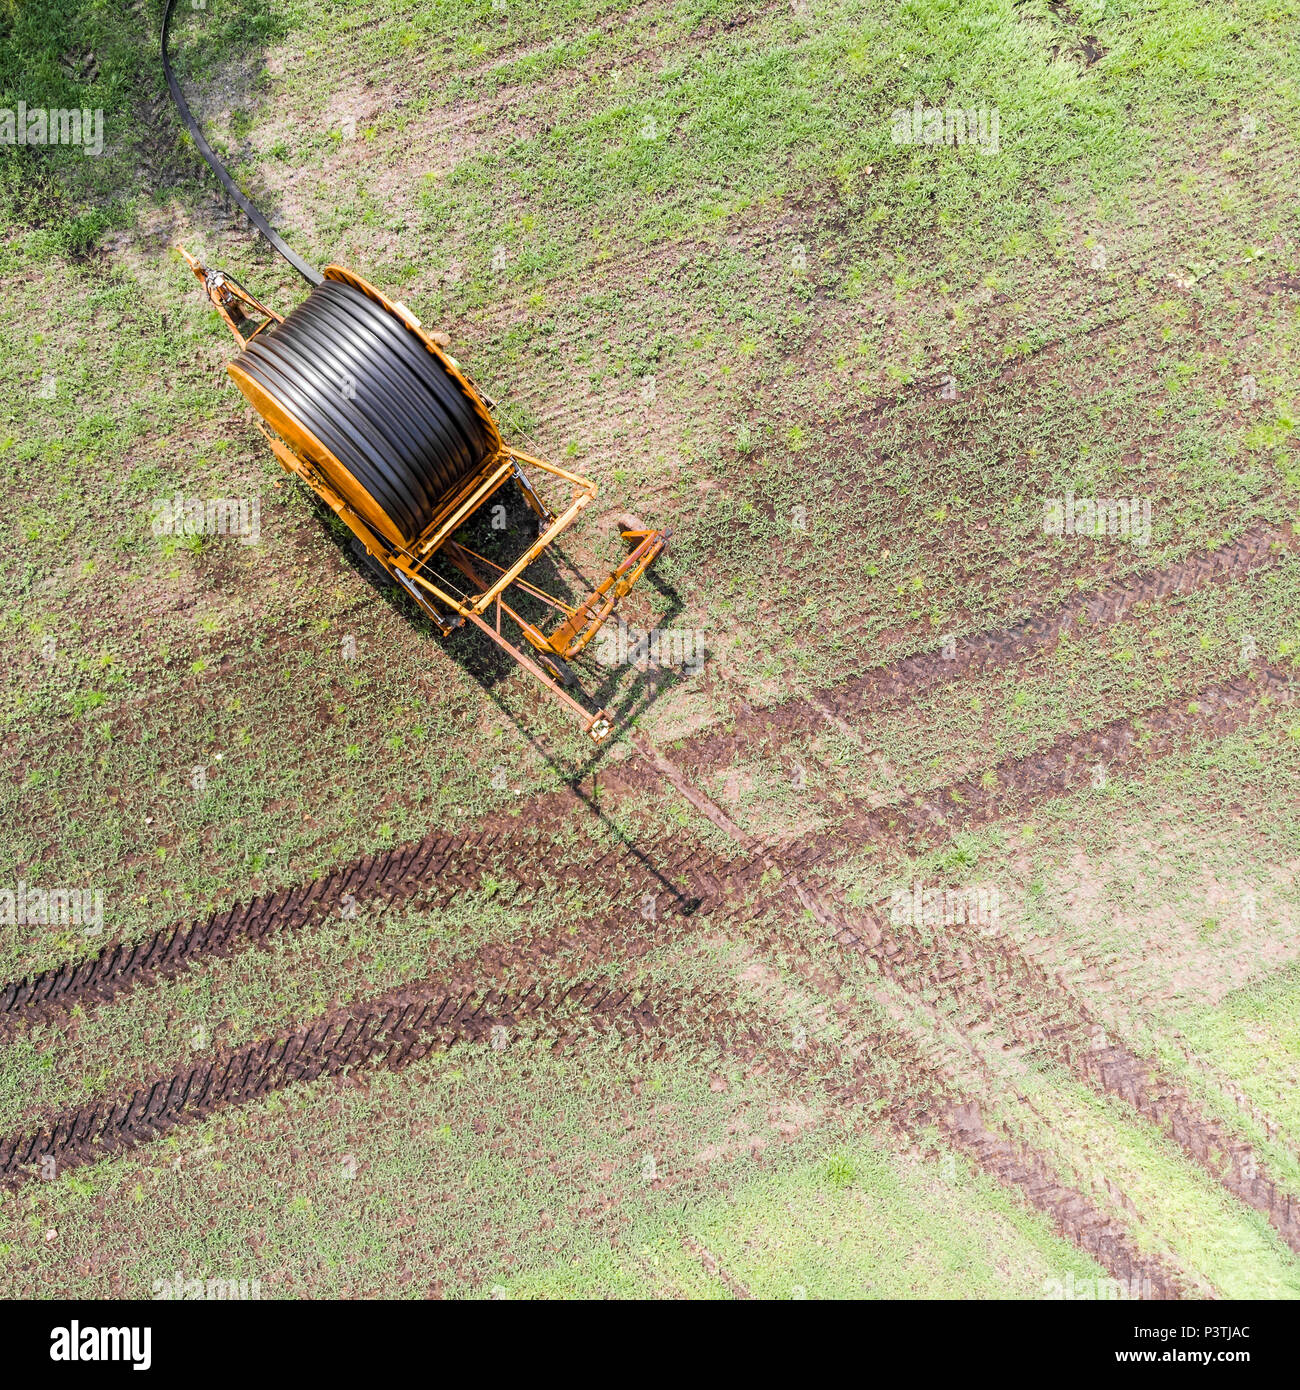 Vista aerea di un enorme carrello tubo flessibile usato dai contadini per irrigare i terreni arabili, Germania vicino a Gifhorn, fatta con drone Foto Stock